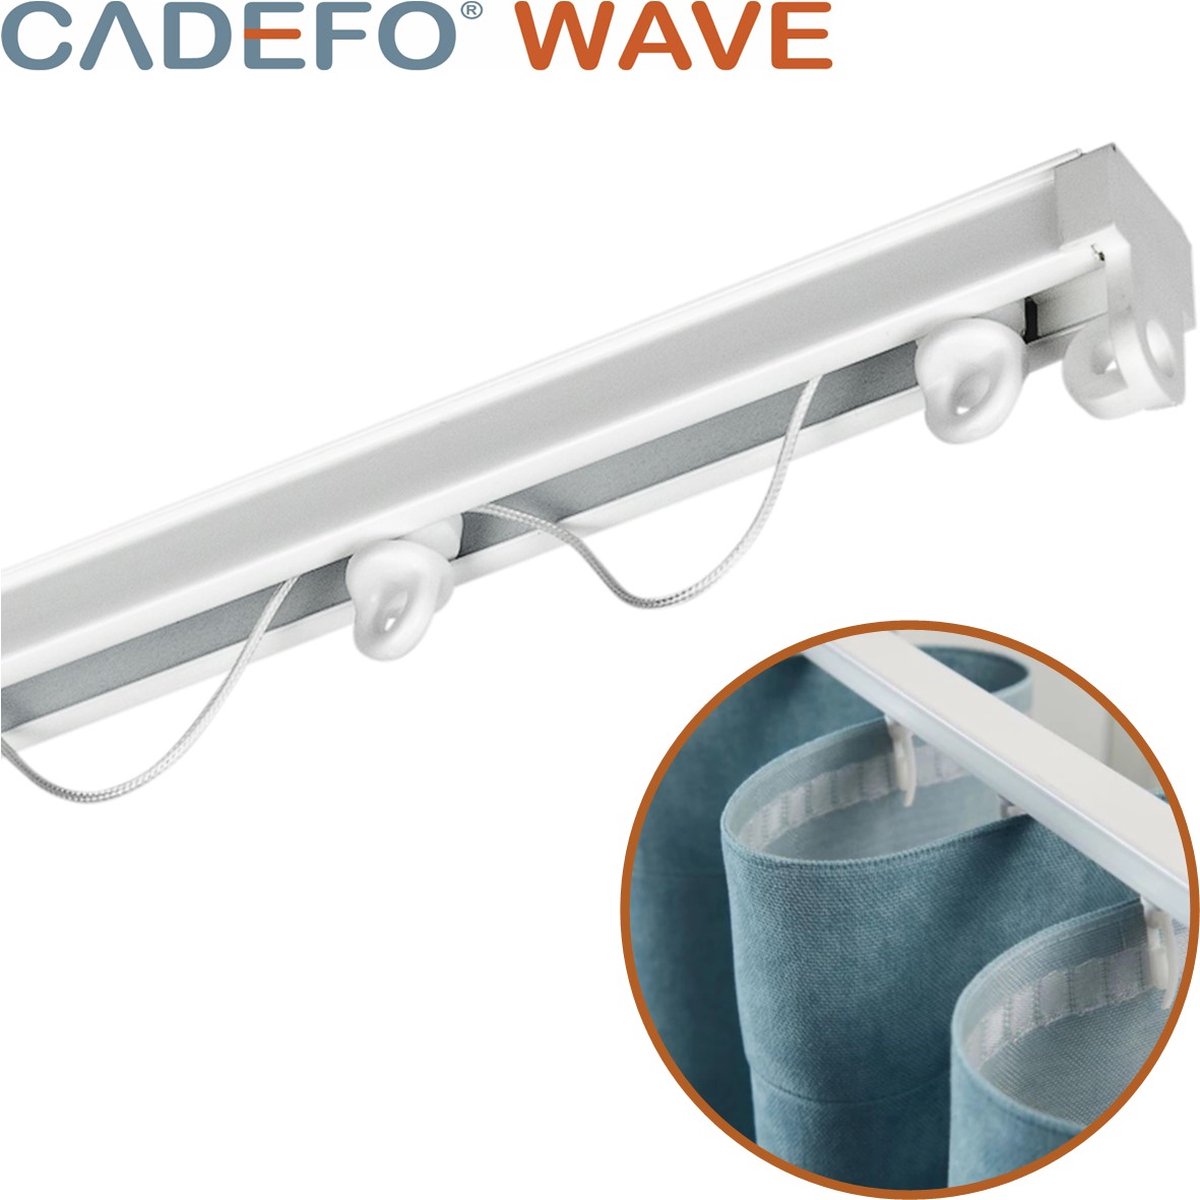 CADEFO WAVE (501 - 550 cm) Gordijnrails - Compleet op maat! - UIT 1 STUK - Leverbaar tot 6 meter - Plafondbevestiging - Lengte 546 cm